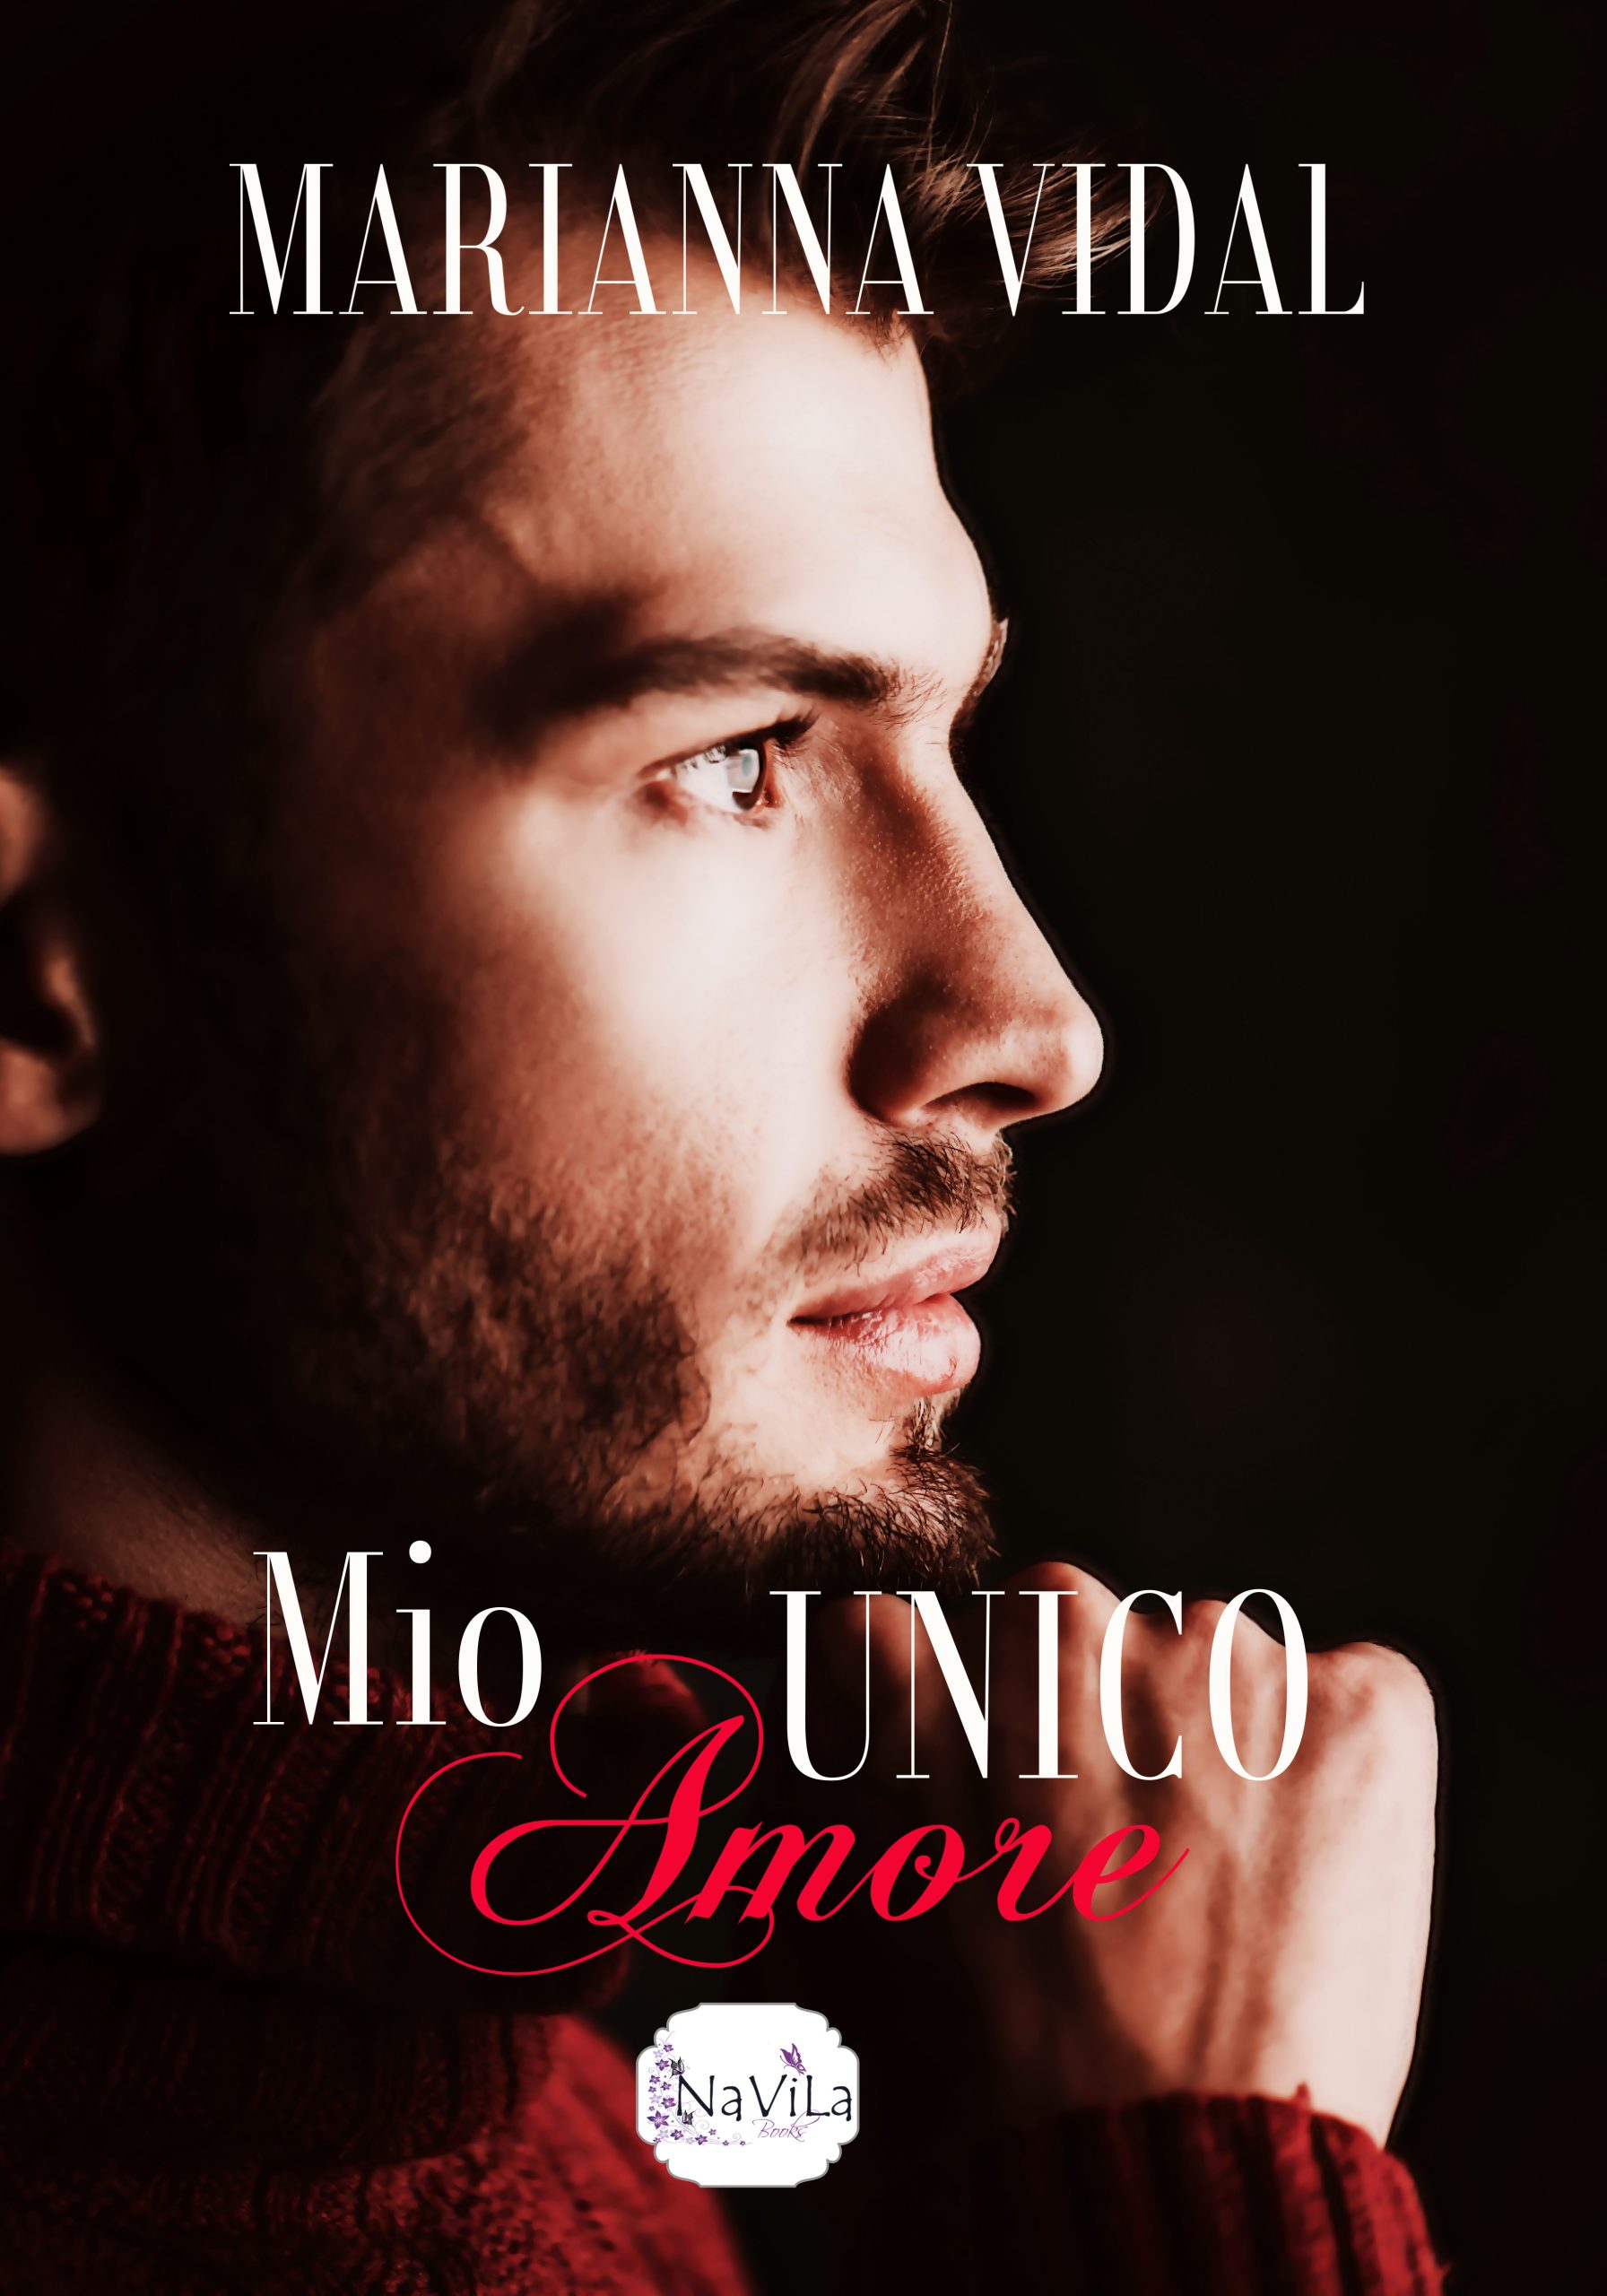 Cover reveal “Mio unico amore” di MARIANNA VIDAL